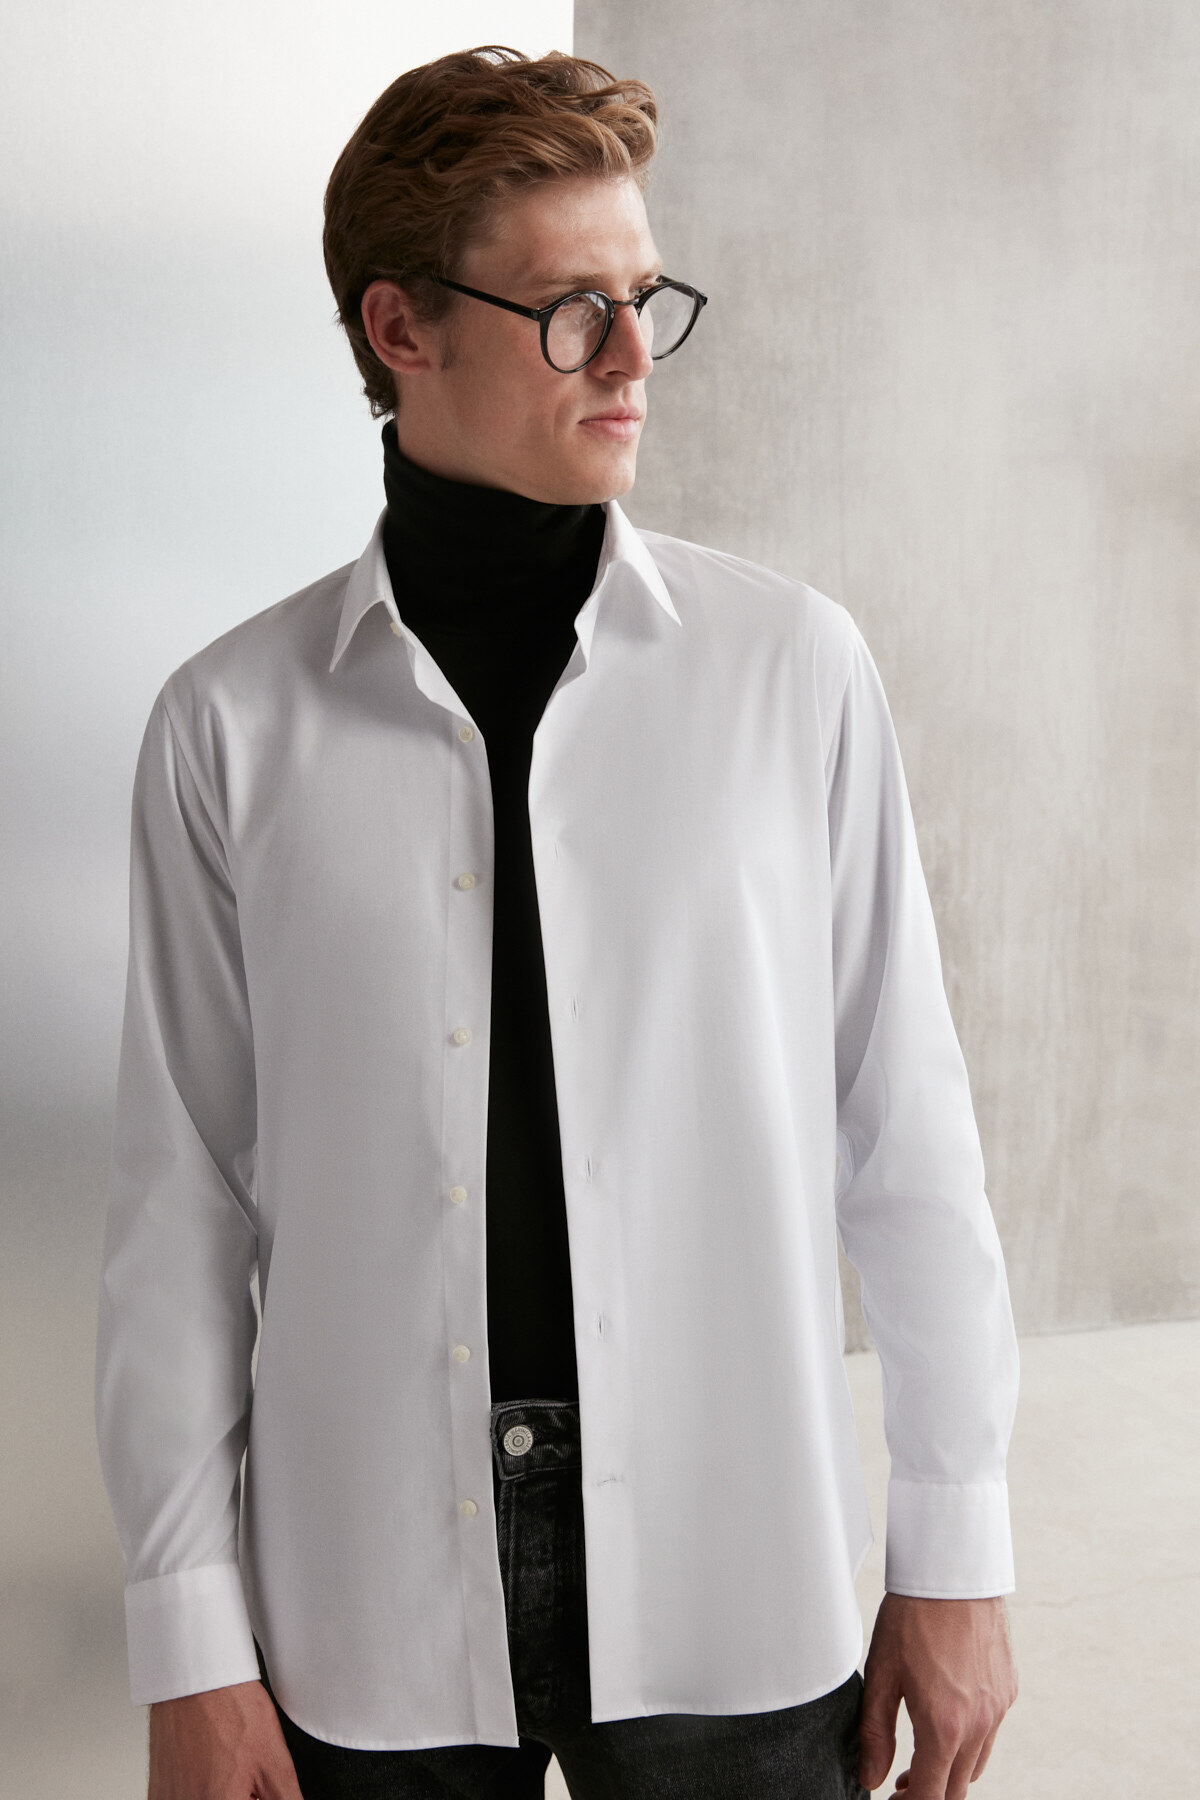 GRIMELANGE Branham Men's Ultra Flexible Cotton Elastane Fabric Slim Fit Poplin White Shir